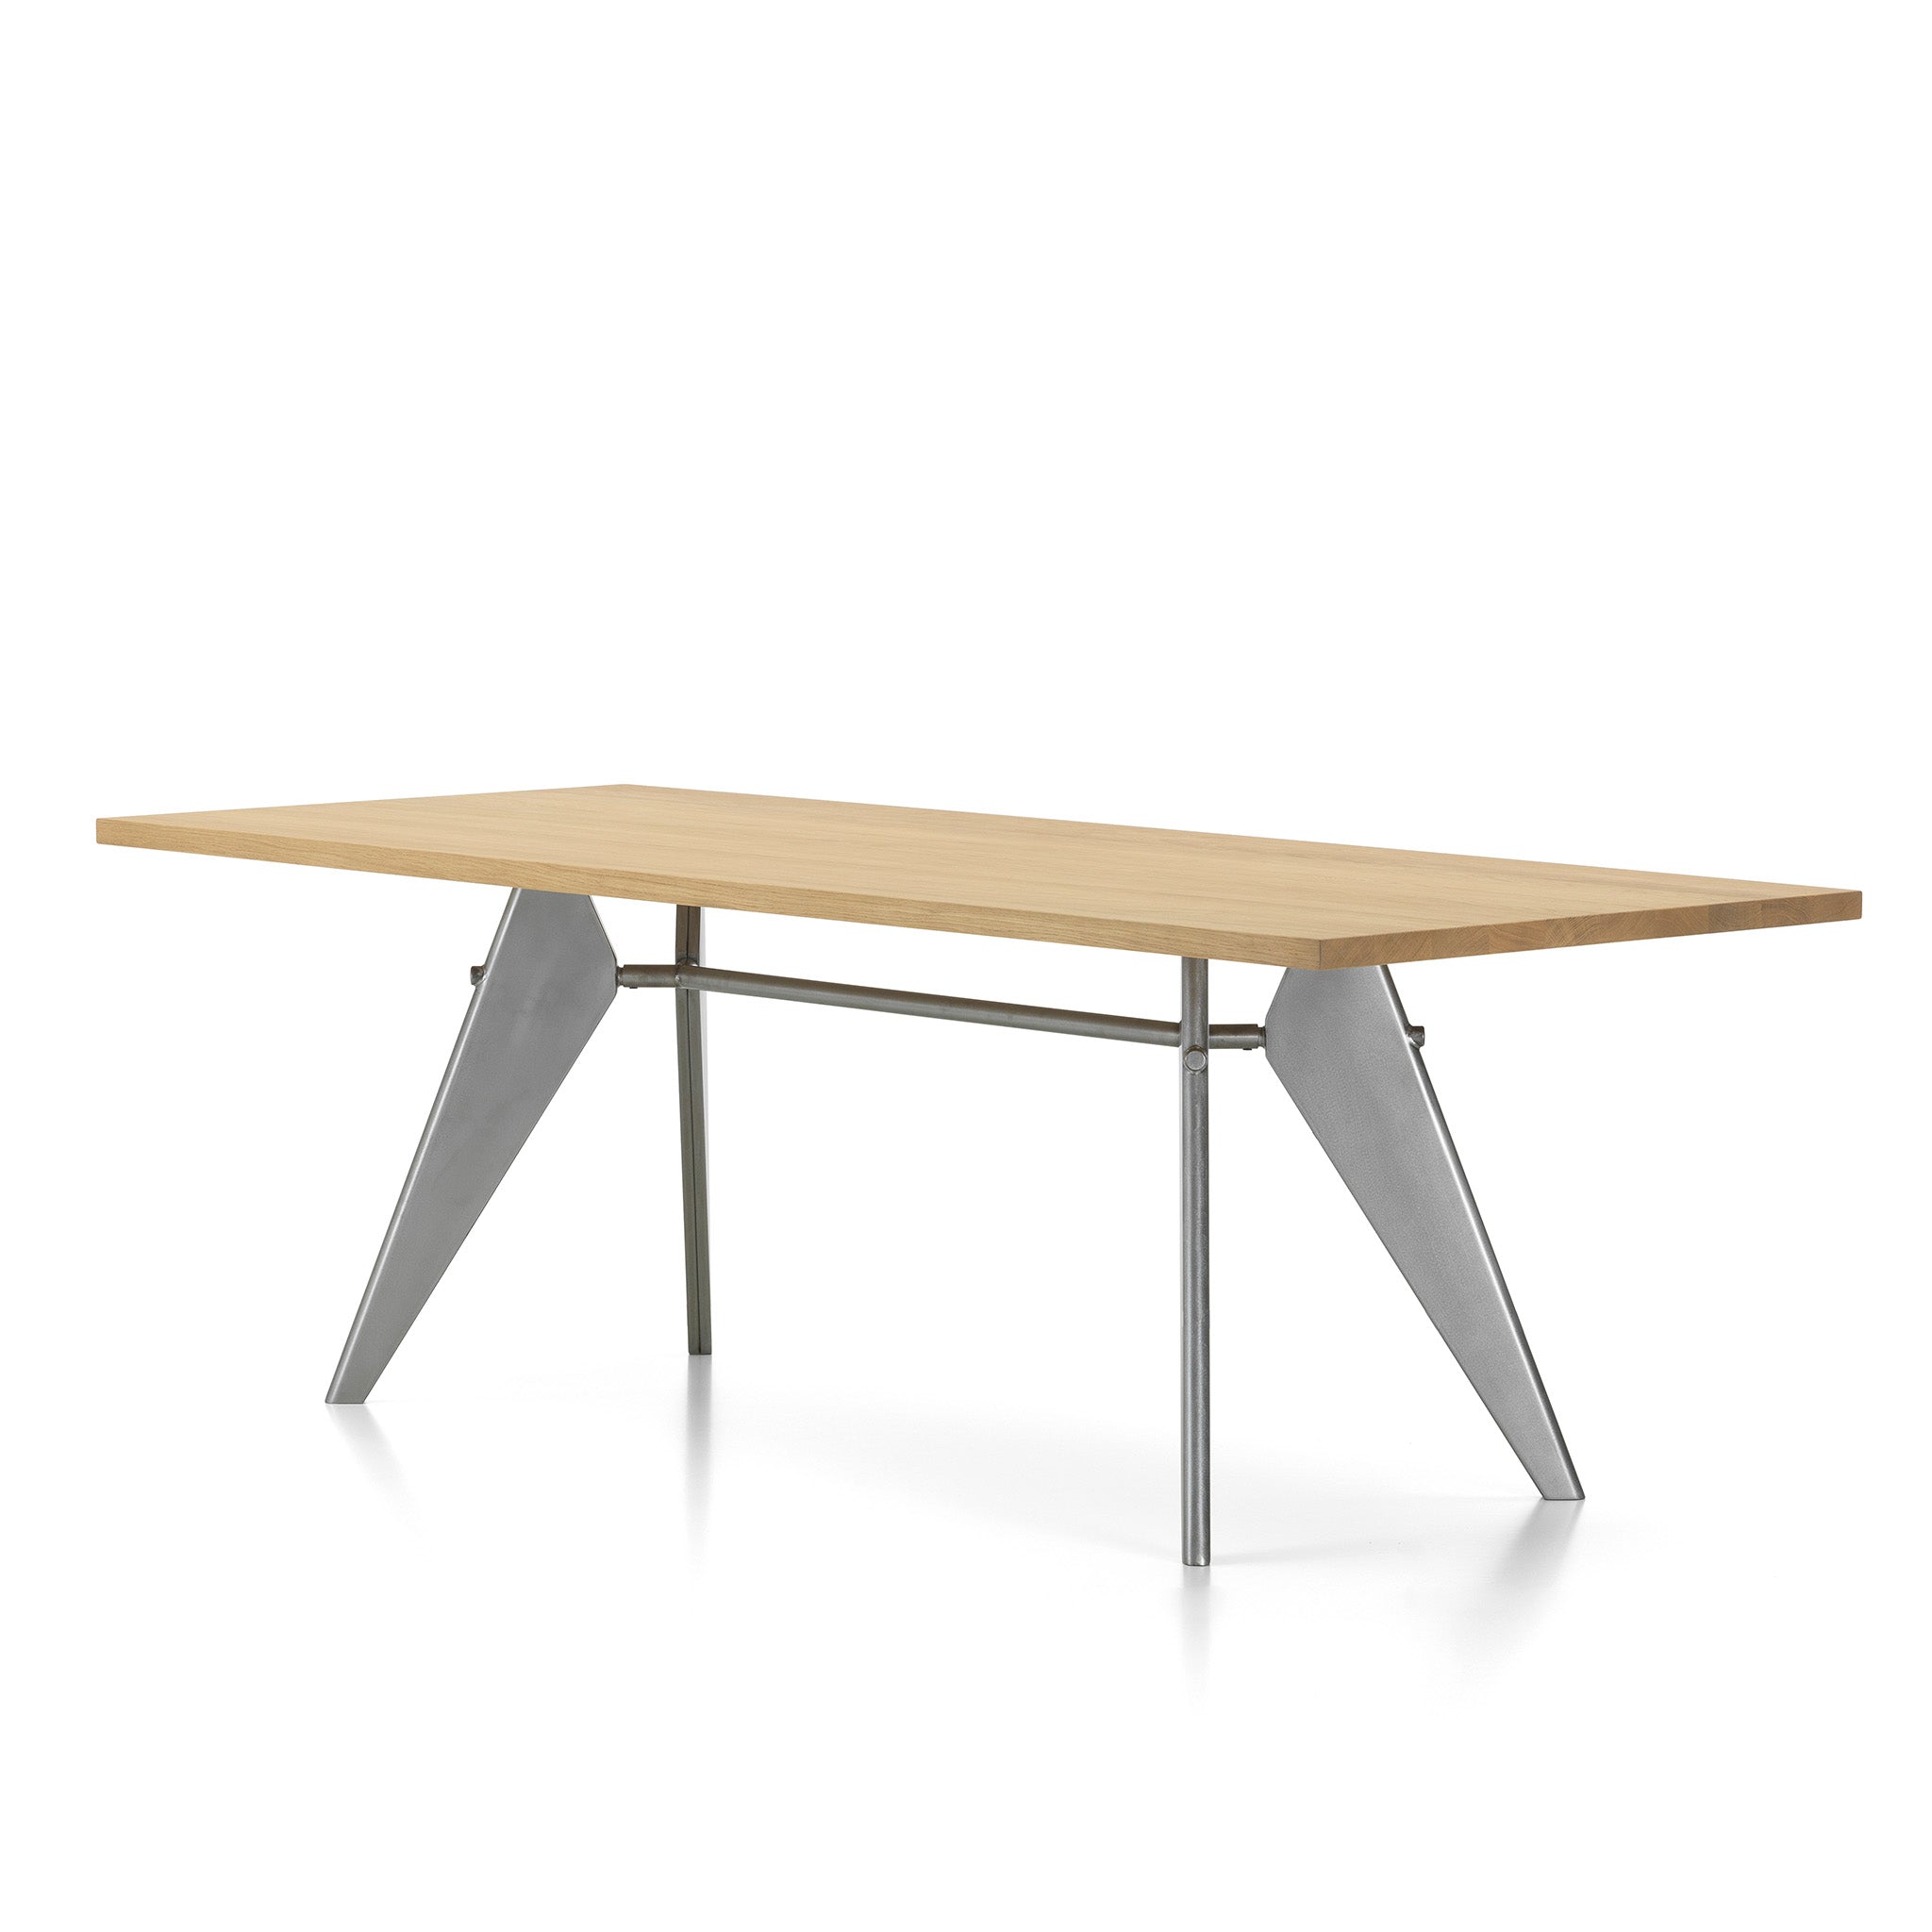 EM Table by Jean Prouvé